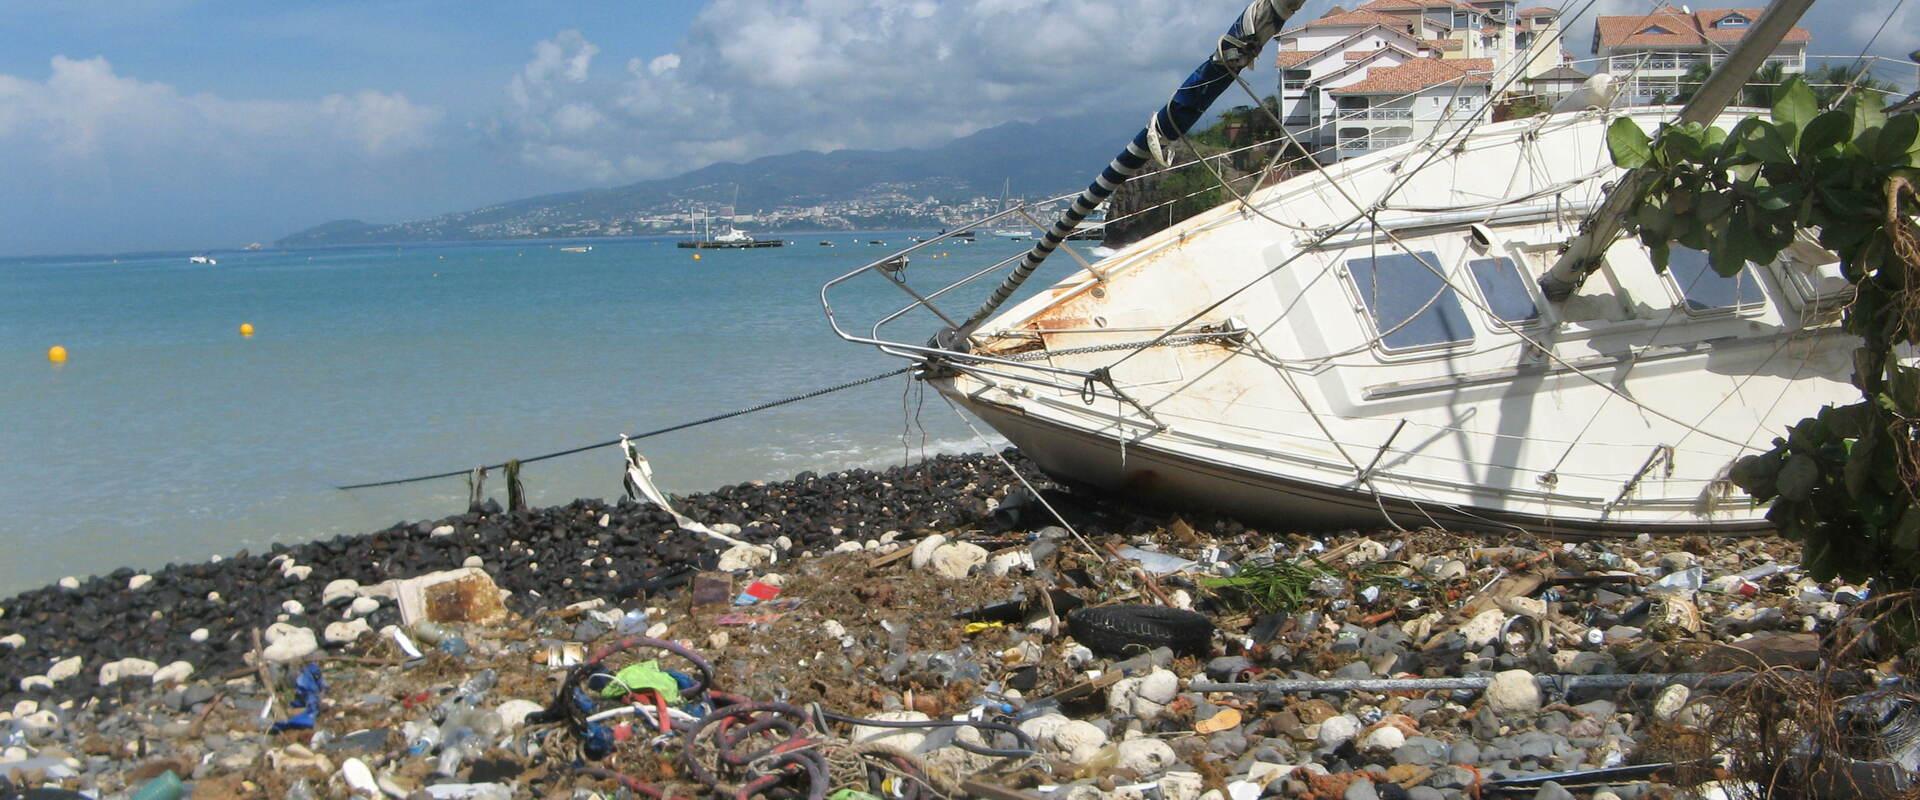 Les impacts sur une plage au lendemain de la houle cyclonique OMAR, Martinique